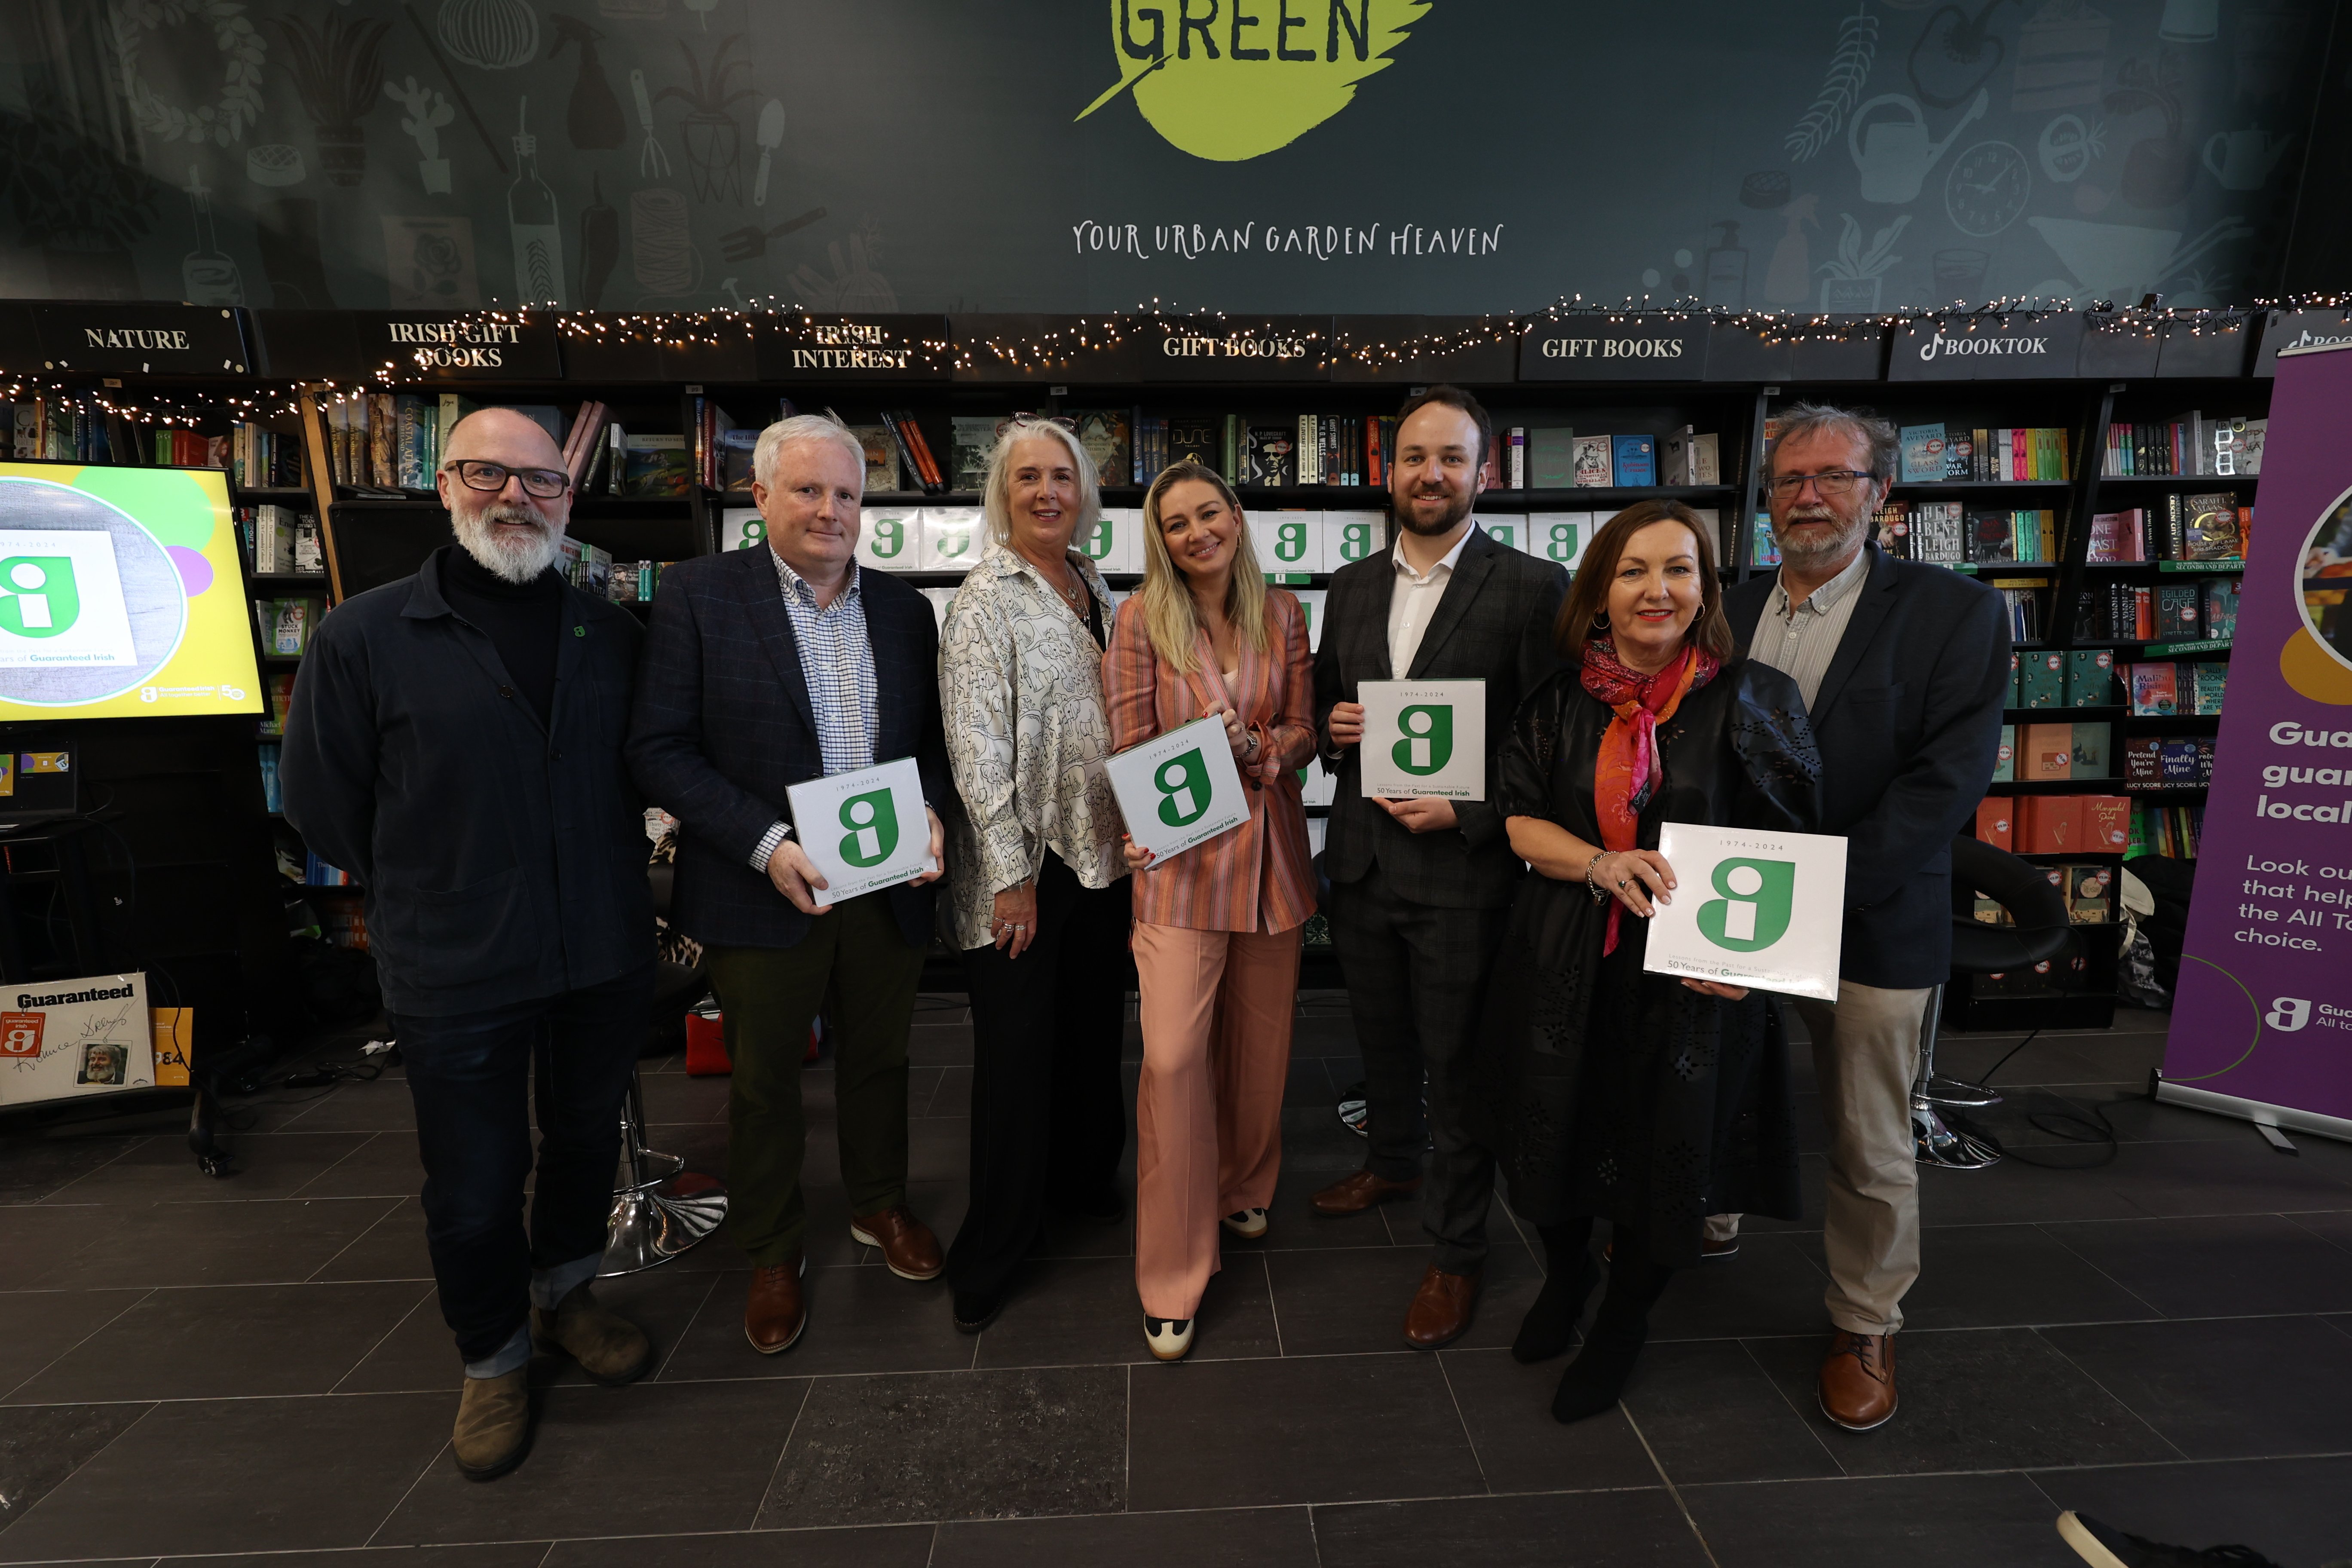 50 Years of Guaranteed Irish Book Launch